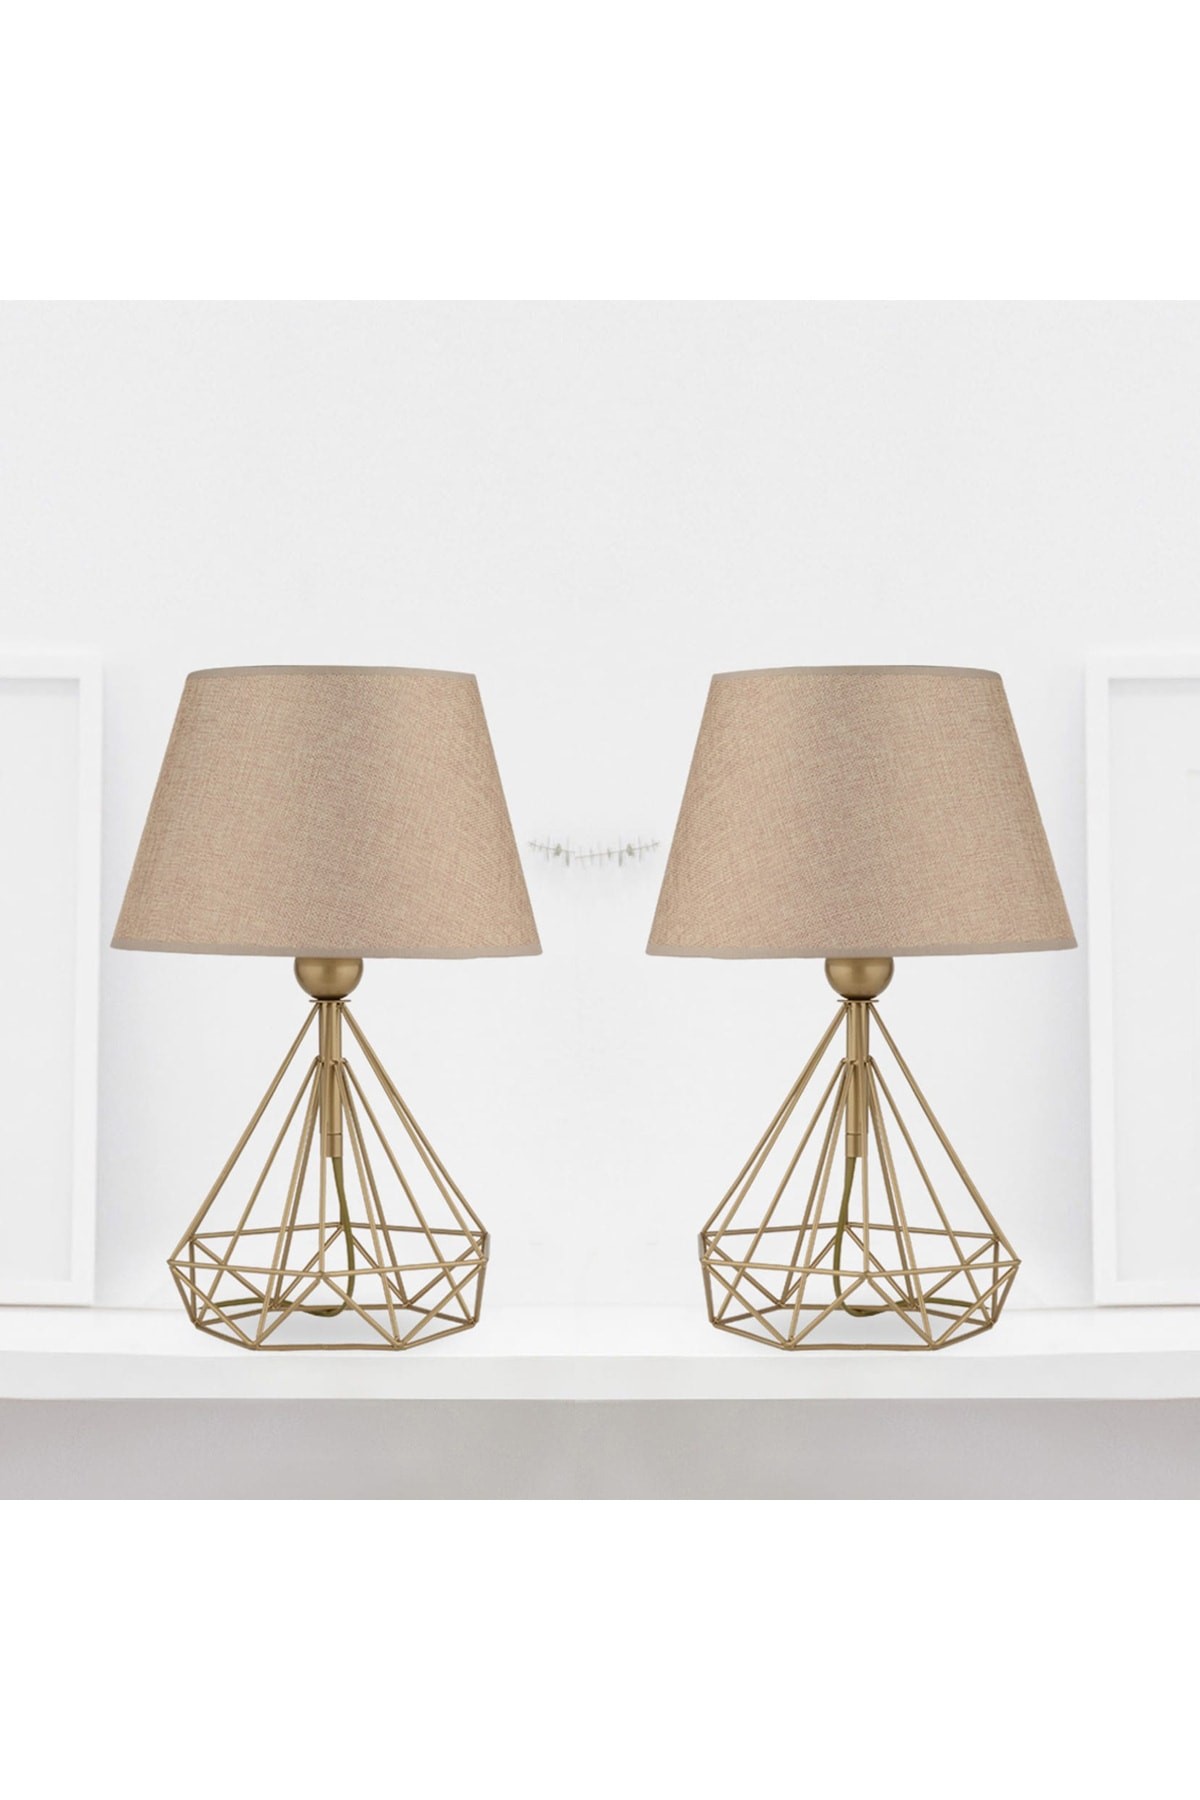 Abat-jours - vendita online di lampade da comodino e tavolo